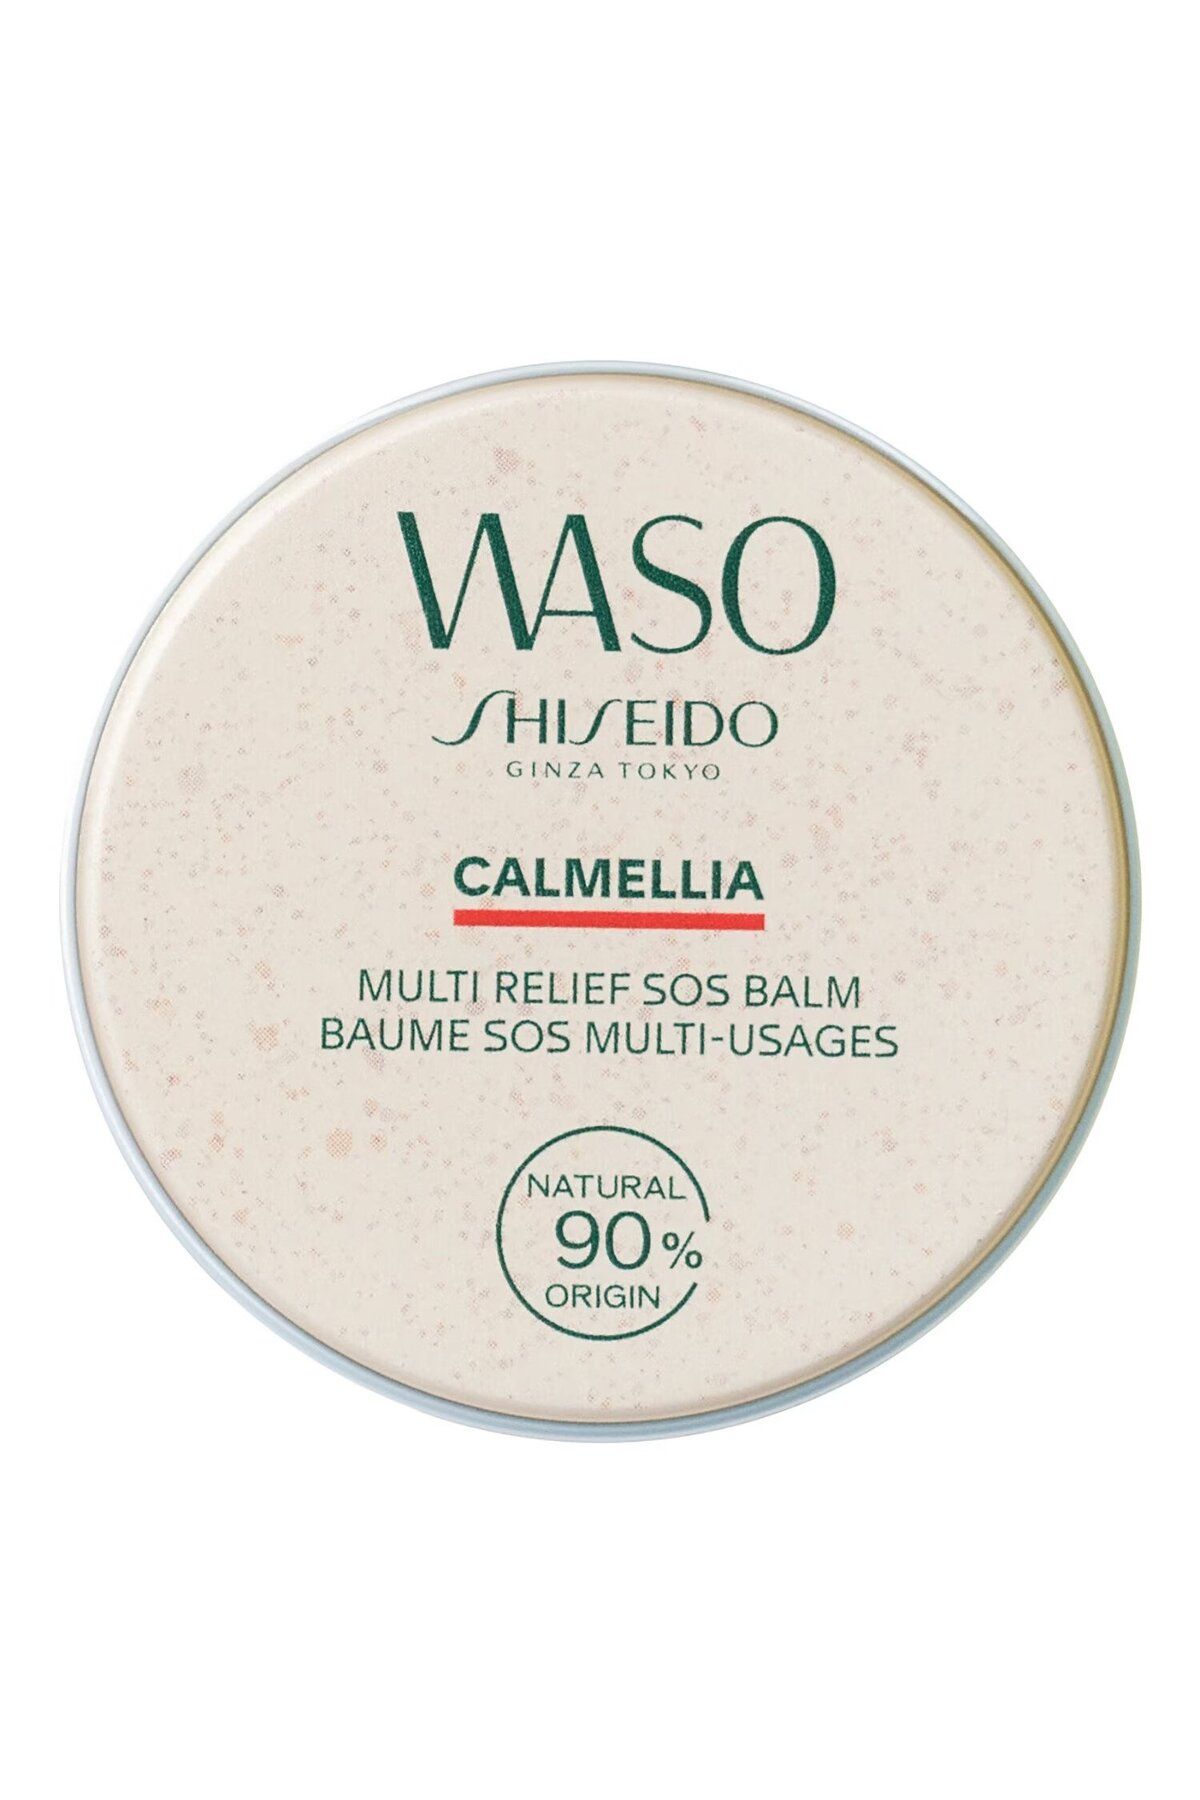 Shiseido Waso Multi Relief-Botanik Yağlar İçeren Yüzünüzü, Vücudunuzu, Saçlarınızı Nemlendiren SOS Balm 20 gr